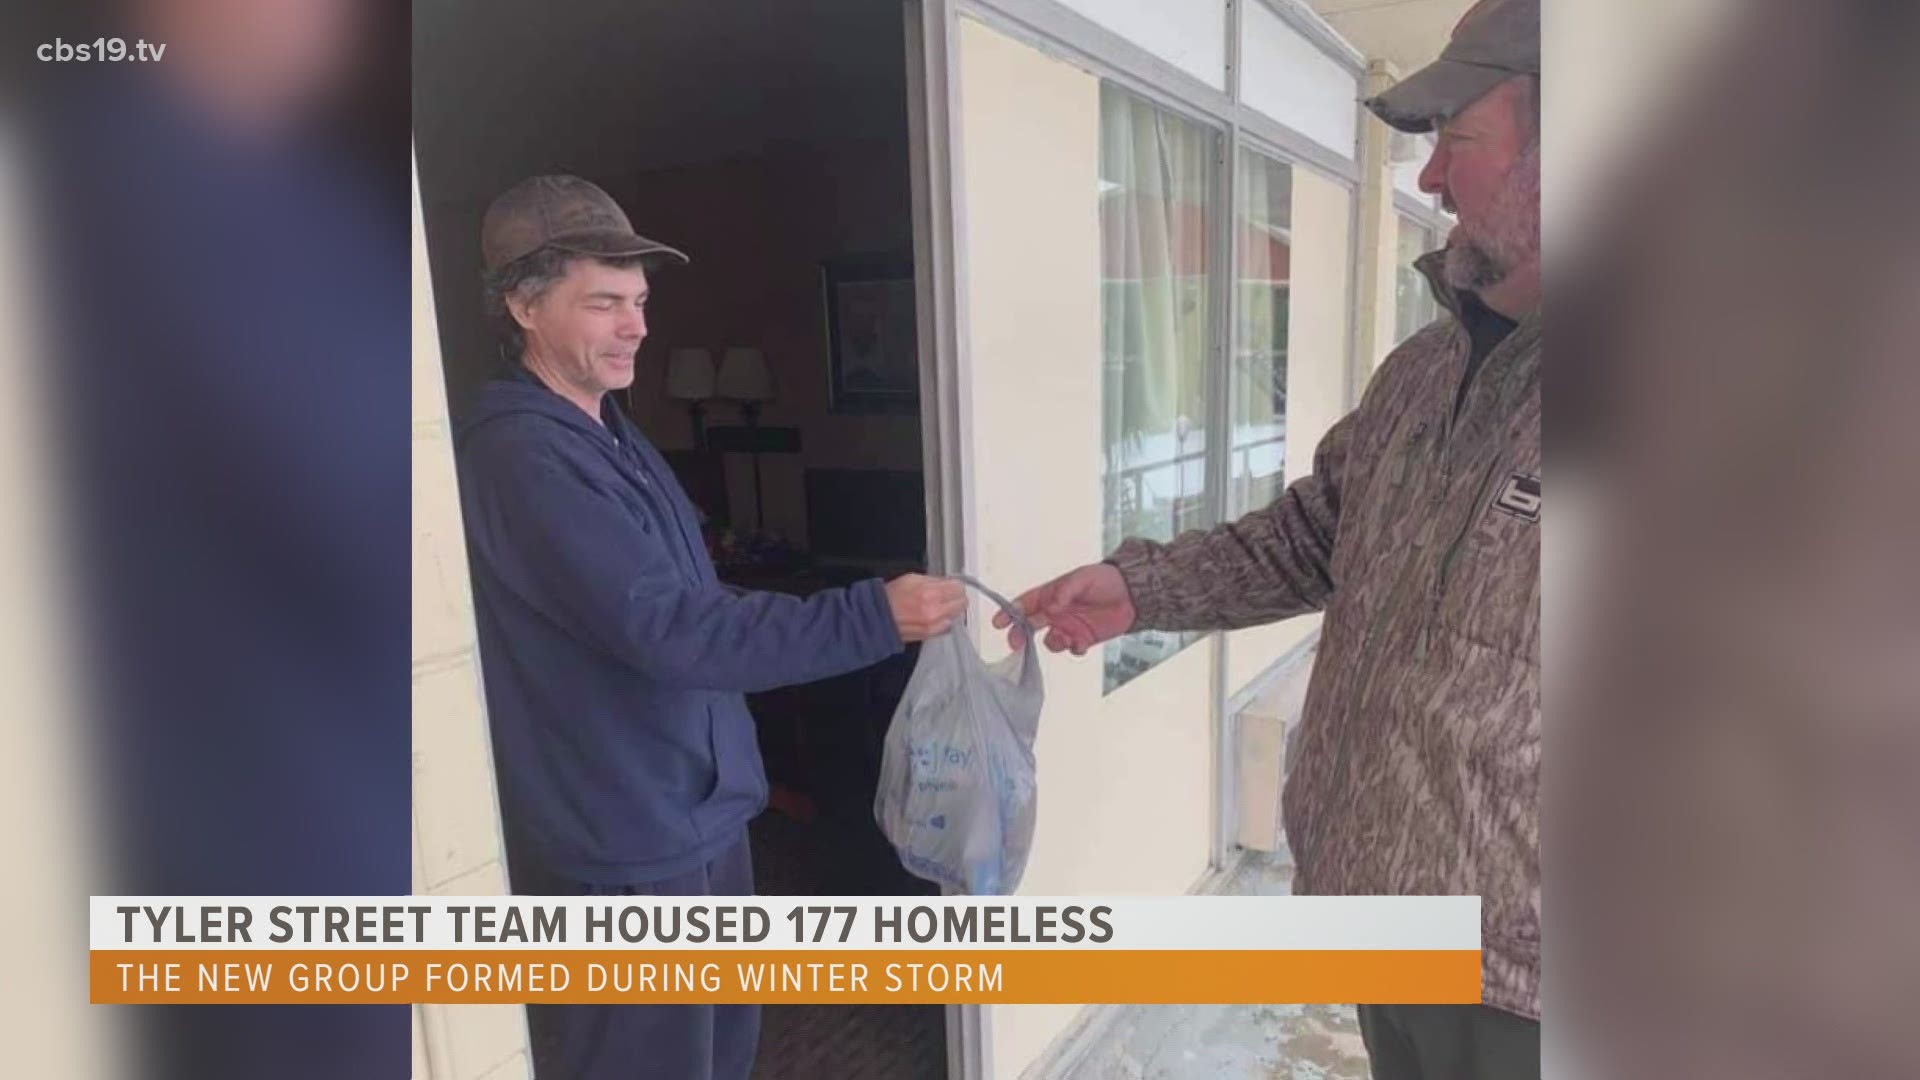 Tyler Street Team provided shelter for 177 homeless during winter storm